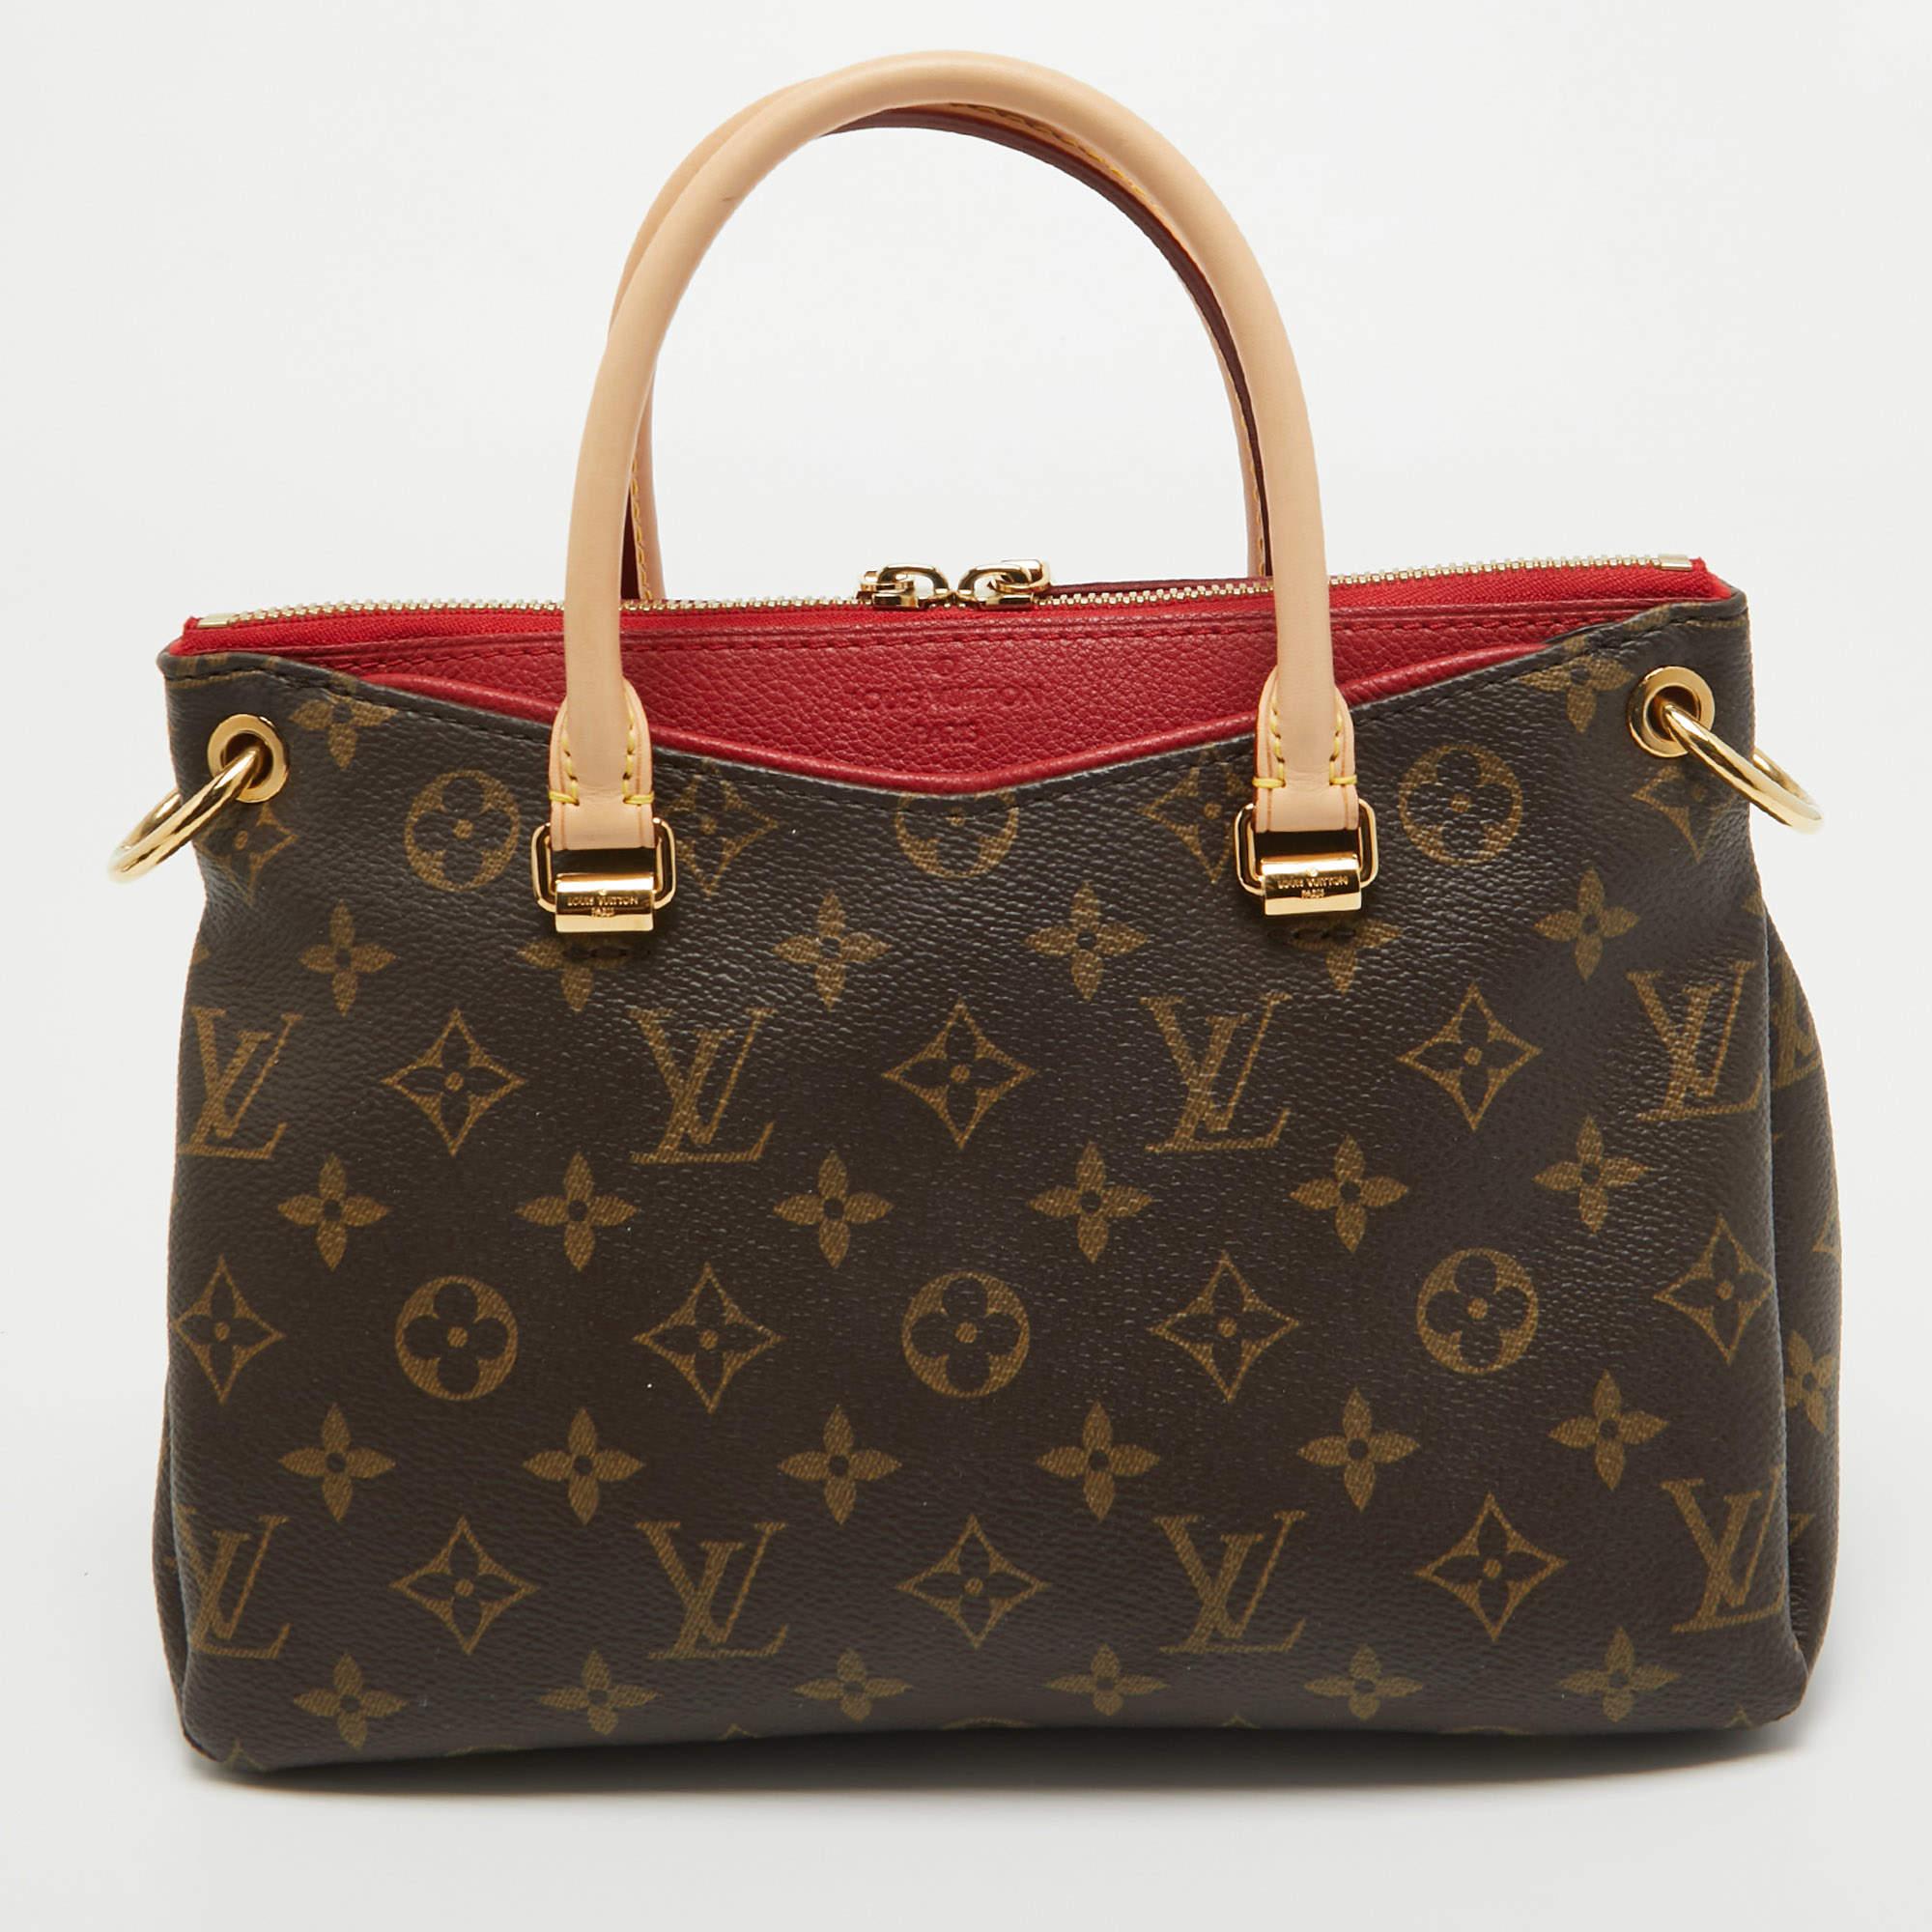 Accessoirisez comme un pro avec ce sac tendance et fonctionnel de Louis Vuitton. Ce sac Pallas, riche et élégant, est confectionné en Silhouette Monogram et présente une silhouette élégante. L'intérieur du sac est doublé d'Alcantara à la texture